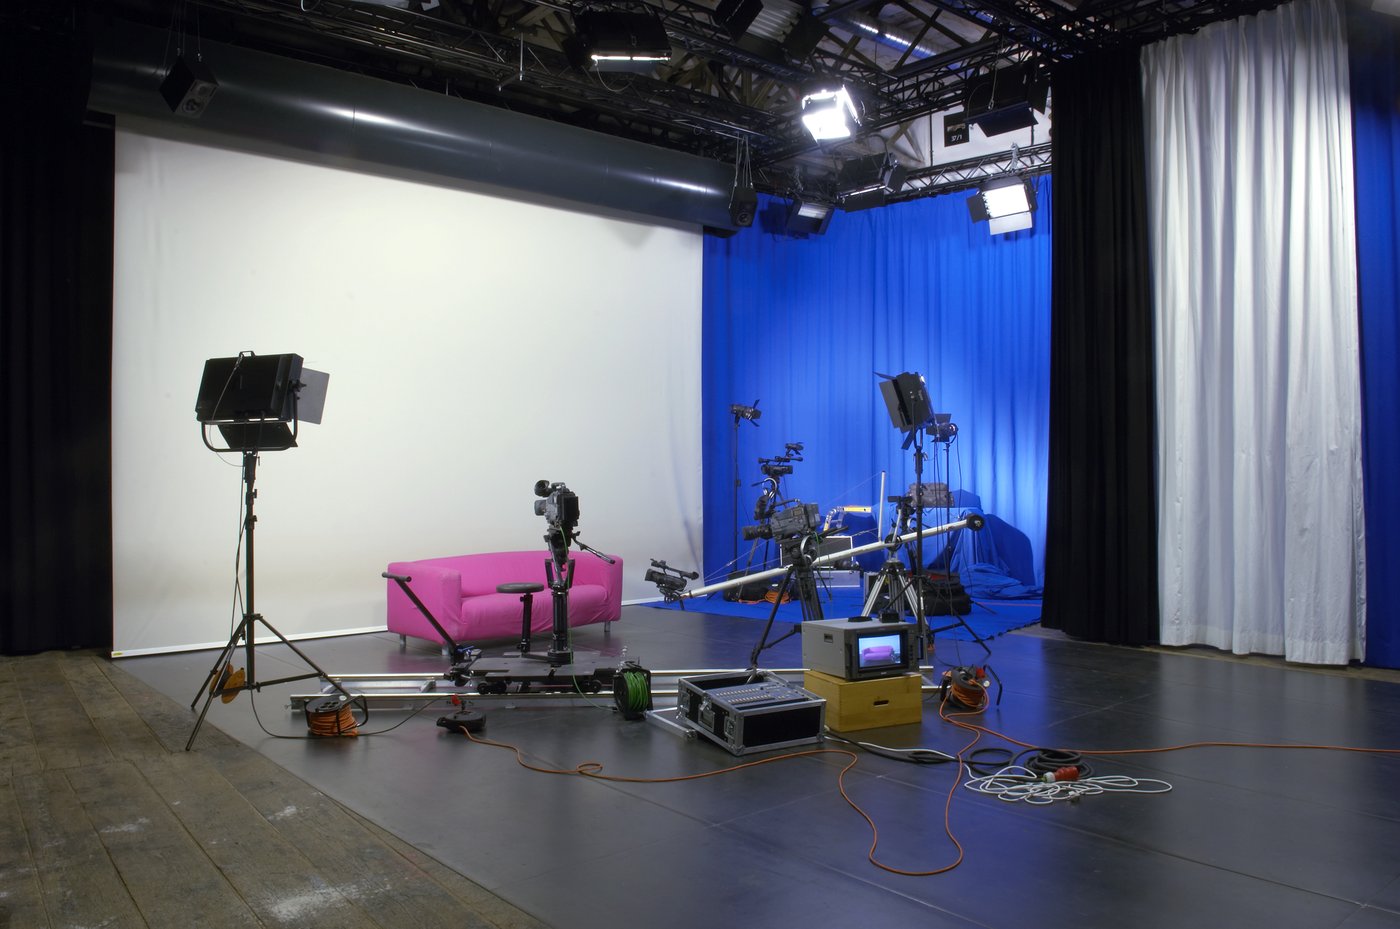 Ein typisches Videostudio mit einer Vielzahl von Kameras, Monitoren und anderen Gerätschaften. Ein rosa Sofa, an der Rückwand ein blauer Vorhang.